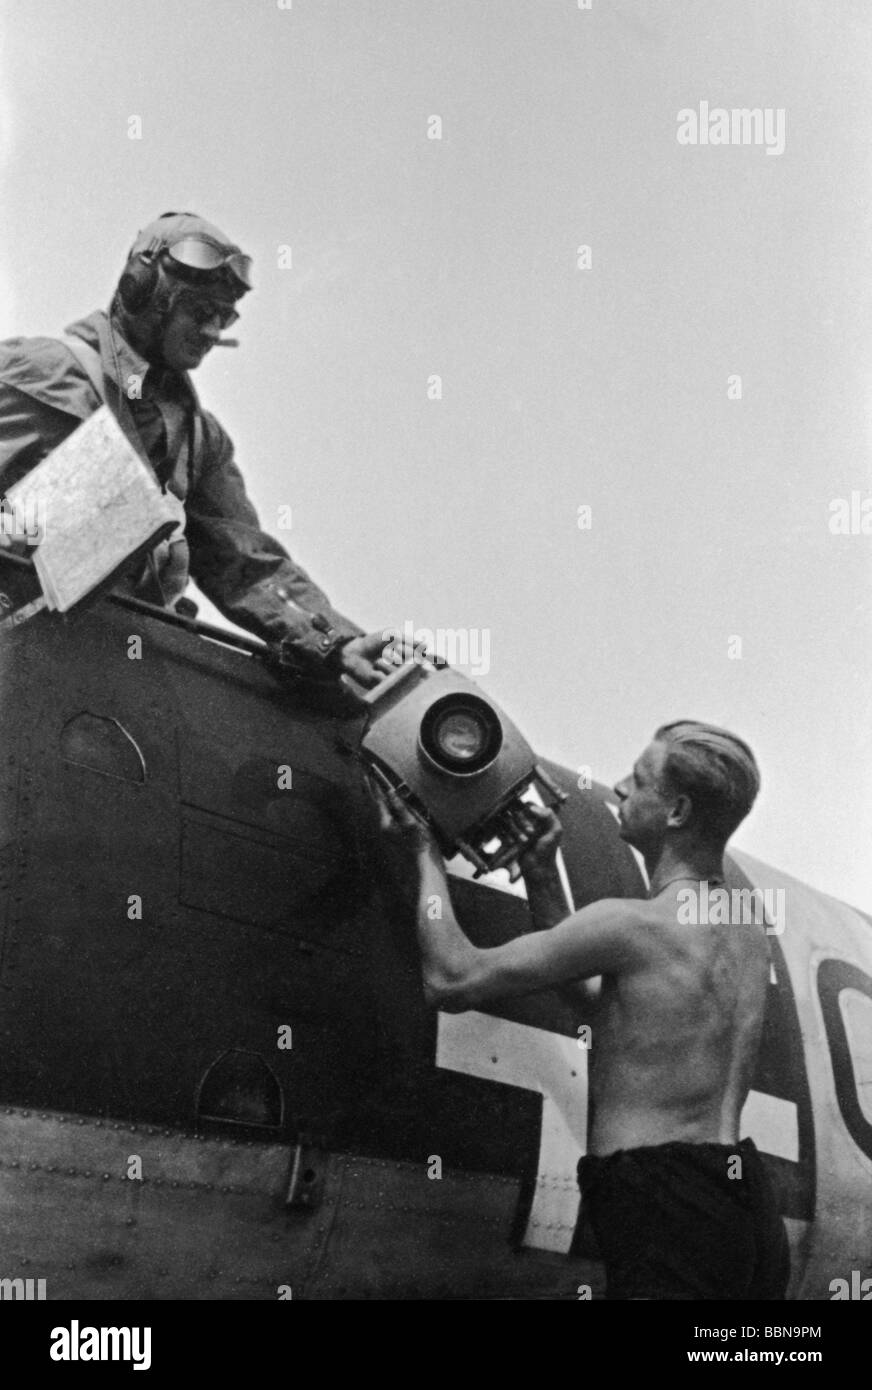 Eventi, Seconda guerra mondiale / seconda guerra mondiale, Russia, guerra aerea, osservatore di un aereo tedesco di ricognizione Henschel Hs 126 prendendo una macchina fotografica a bordo, fronte orientale, giugno 1941, Foto Stock